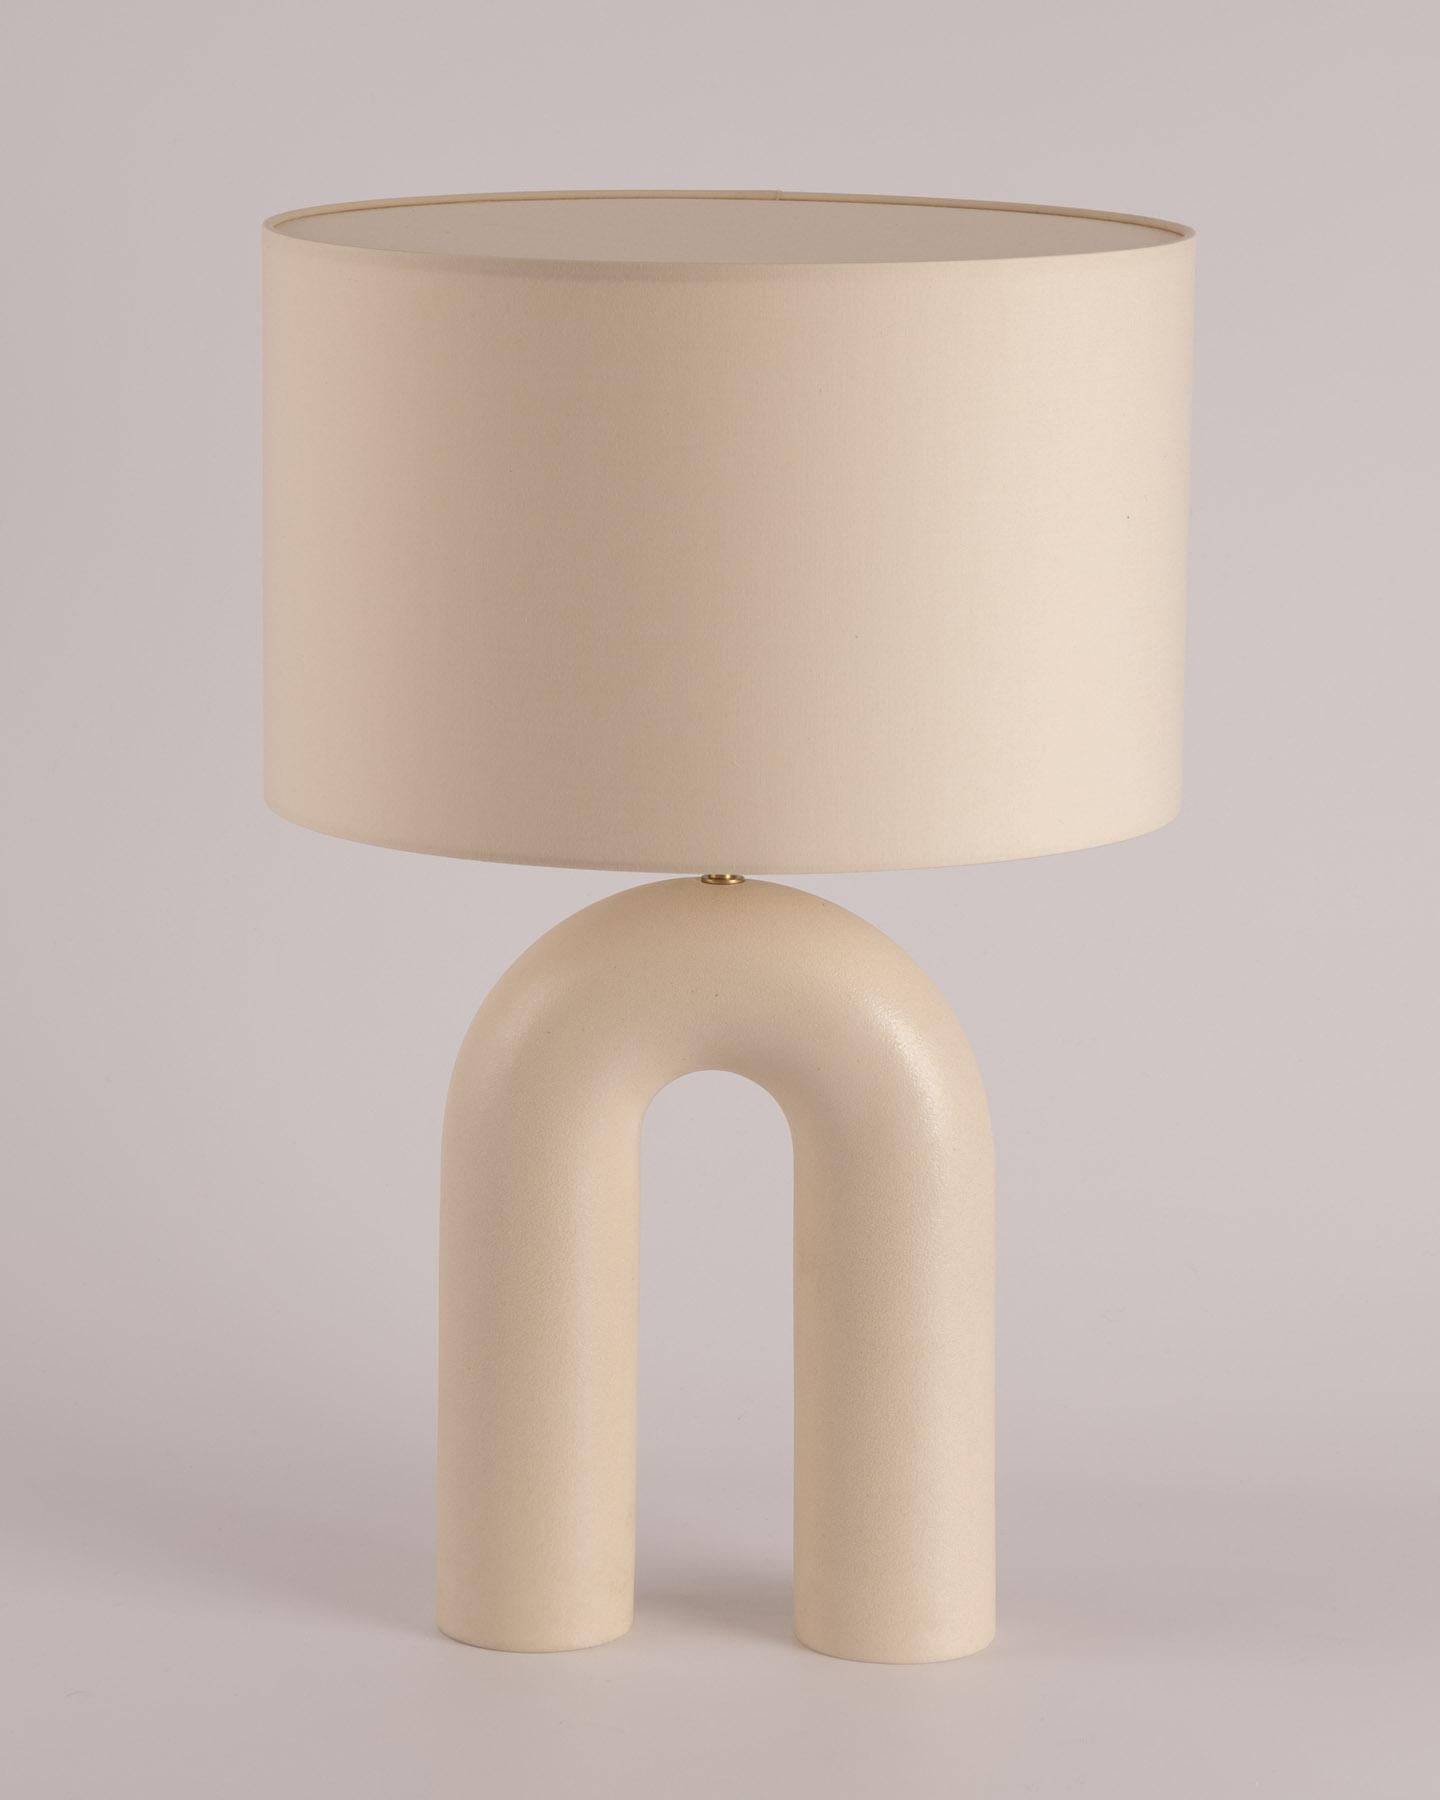 Lampe de bureau Arko en céramique écrue avec abat-jour beige par Simone & Marcel
Dimensions : Ø 40 x H 67 cm : Ø 40 x H 67 cm.
MATERIAL : Abat-jour en coton et céramique.

Également disponible dans différents marbres et céramiques. Options